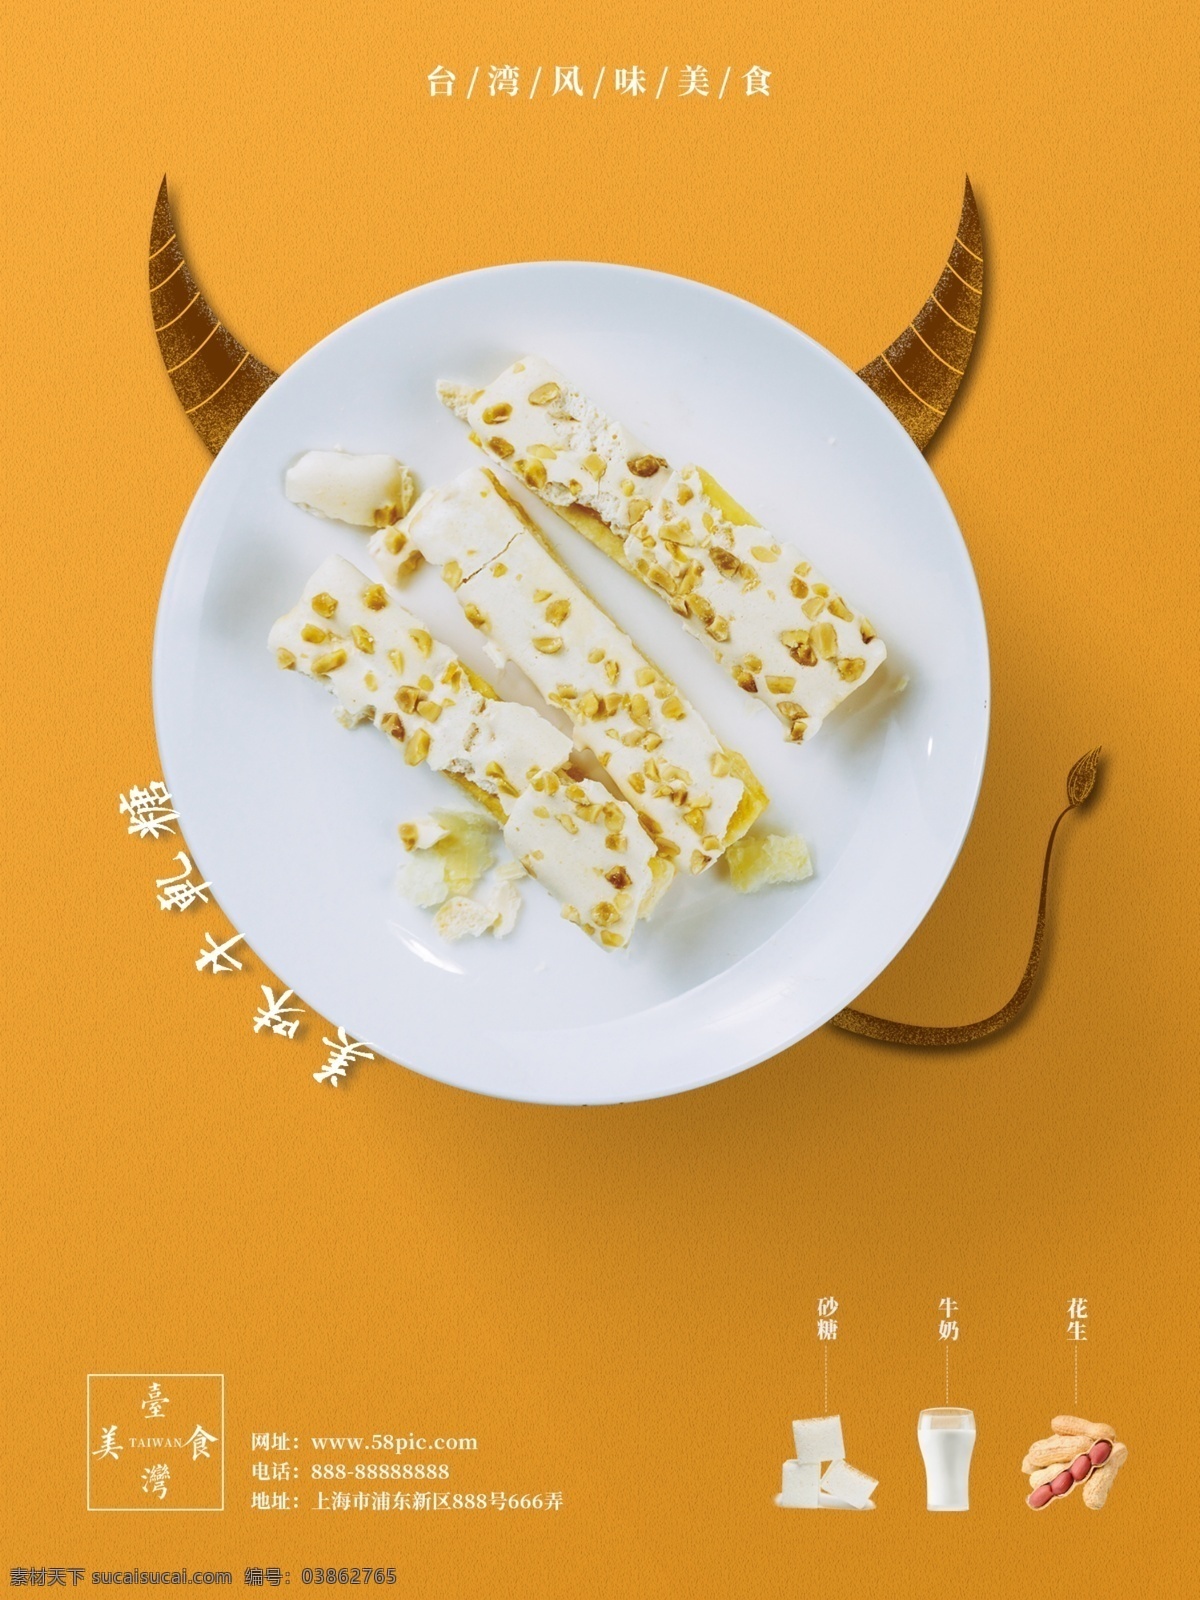 原创 台湾 美食 牛轧糖 宣传海报 海报 美食海报 质感美食海报 台湾风味 台湾美食 简约风 极简风